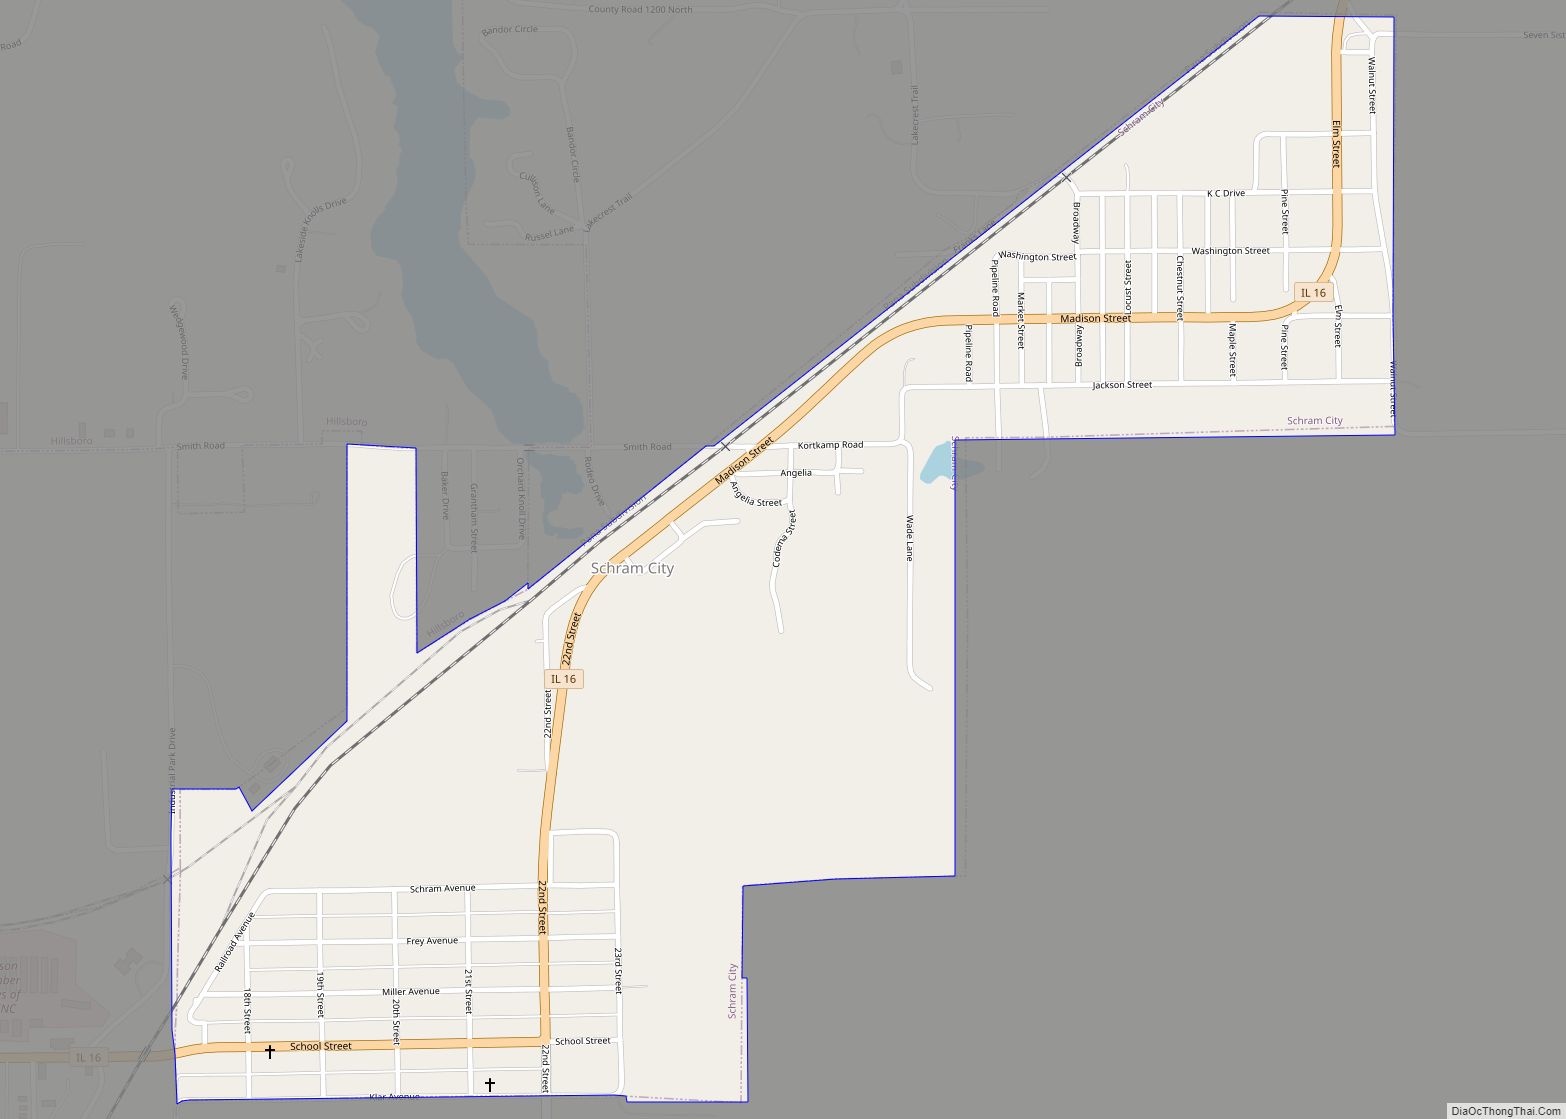 Map of Schram City village